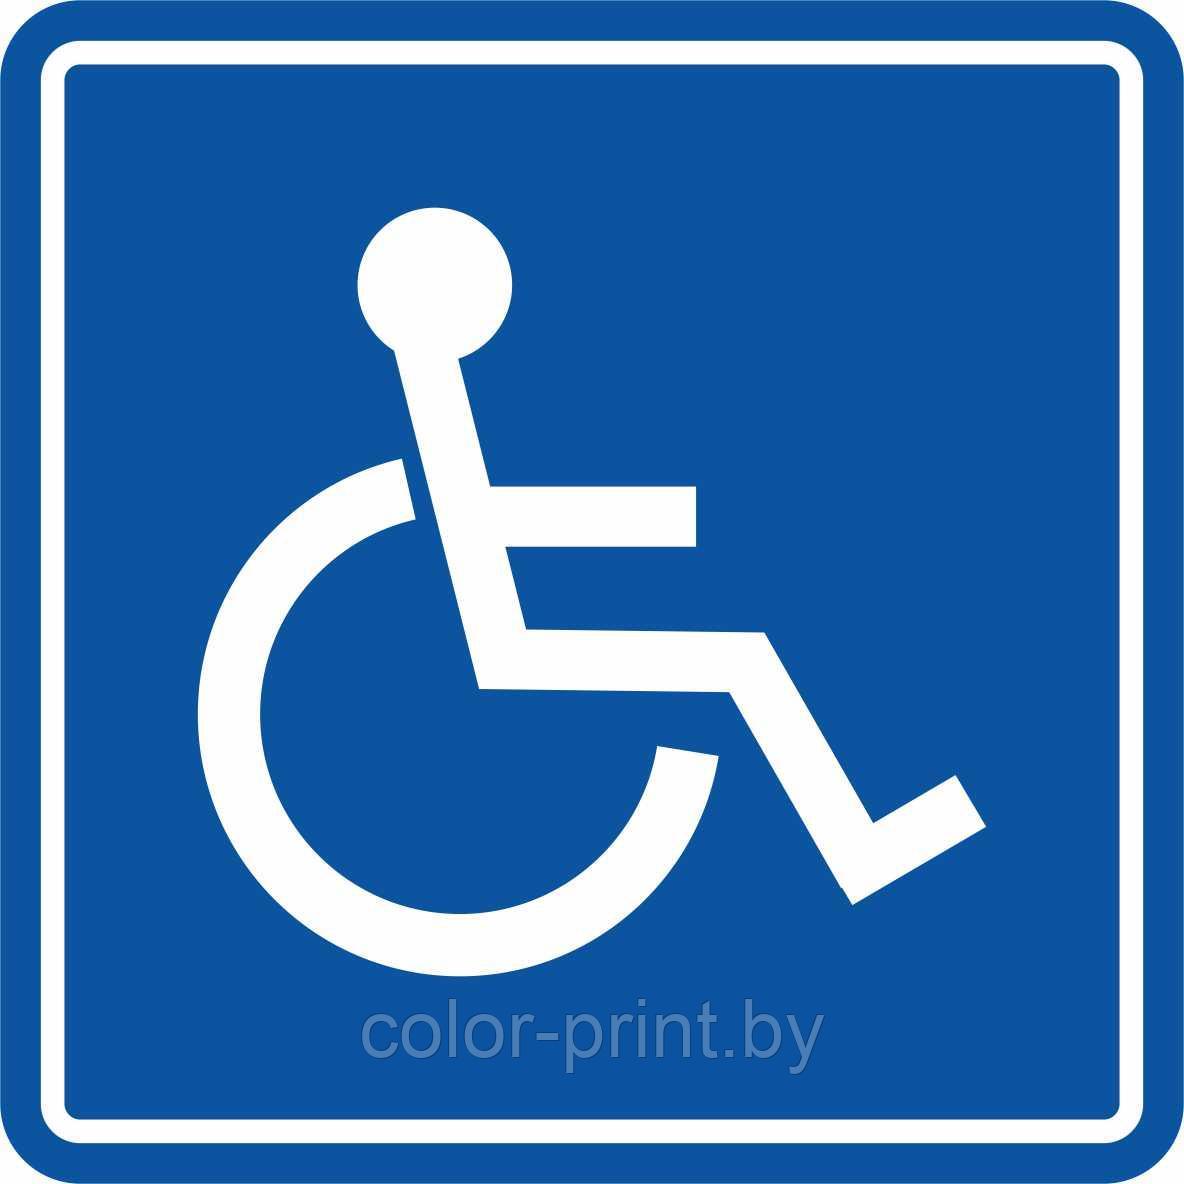 Тактильный знак пиктограмма "Доступность для инвалидов в креслах-колясках"